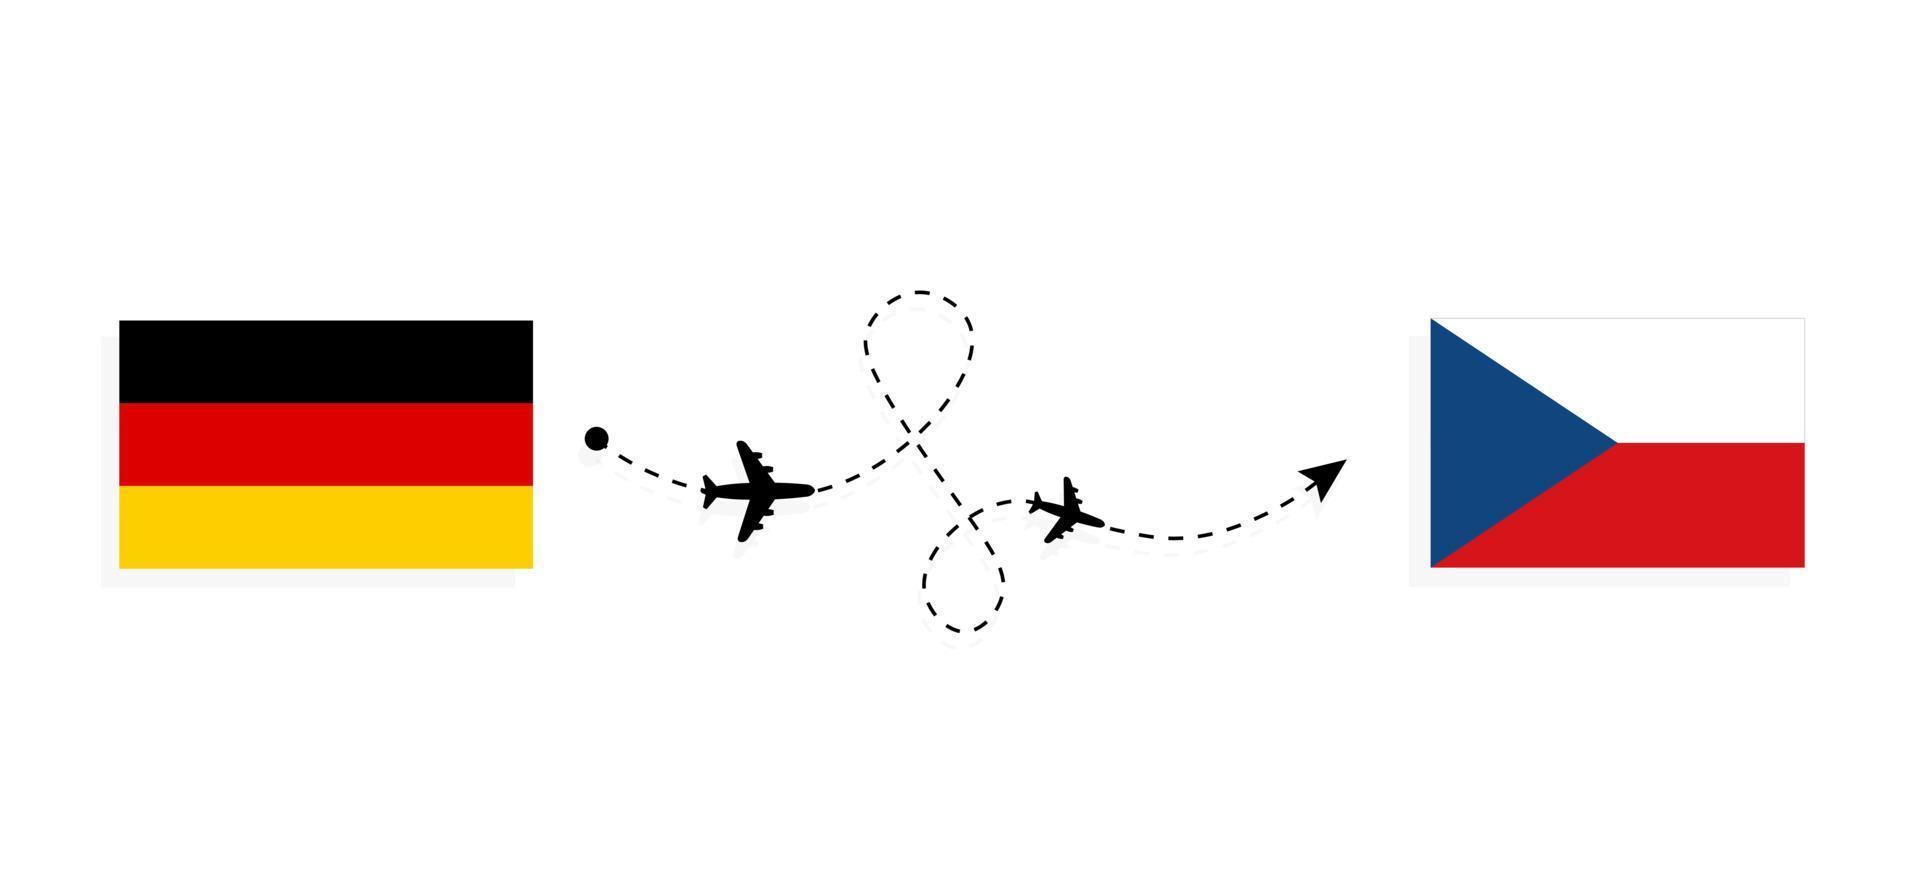 Vuelo y viaje desde Alemania a Chequia en avión de pasajeros concepto de viaje vector